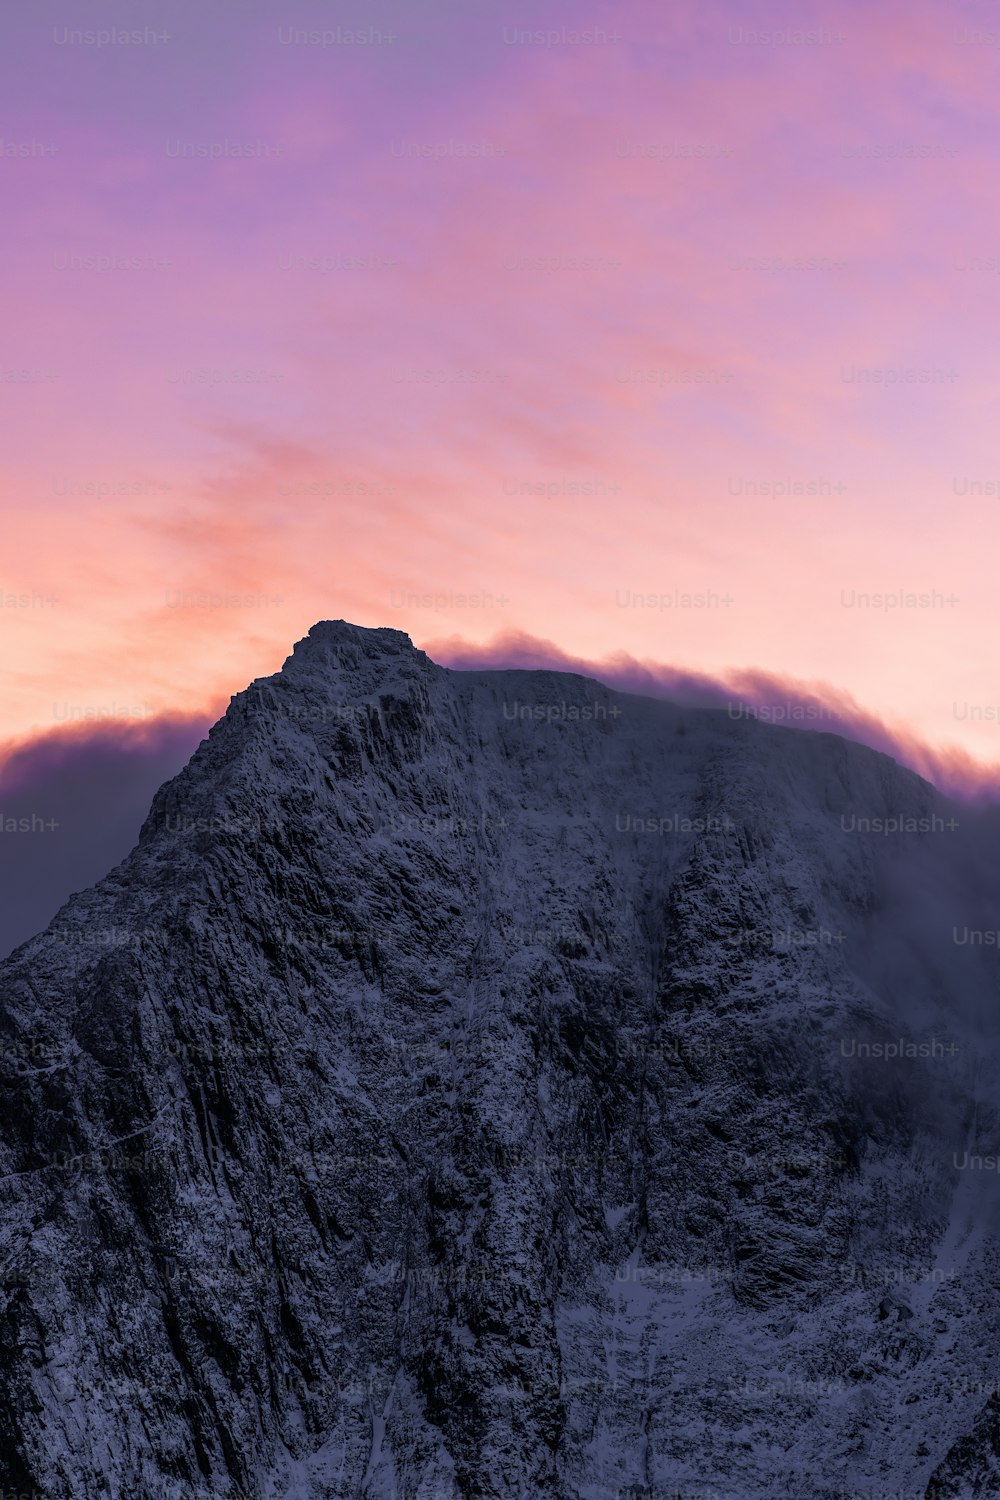 Ein sehr hoher Berg mit einem rosafarbenen Himmel im Hintergrund